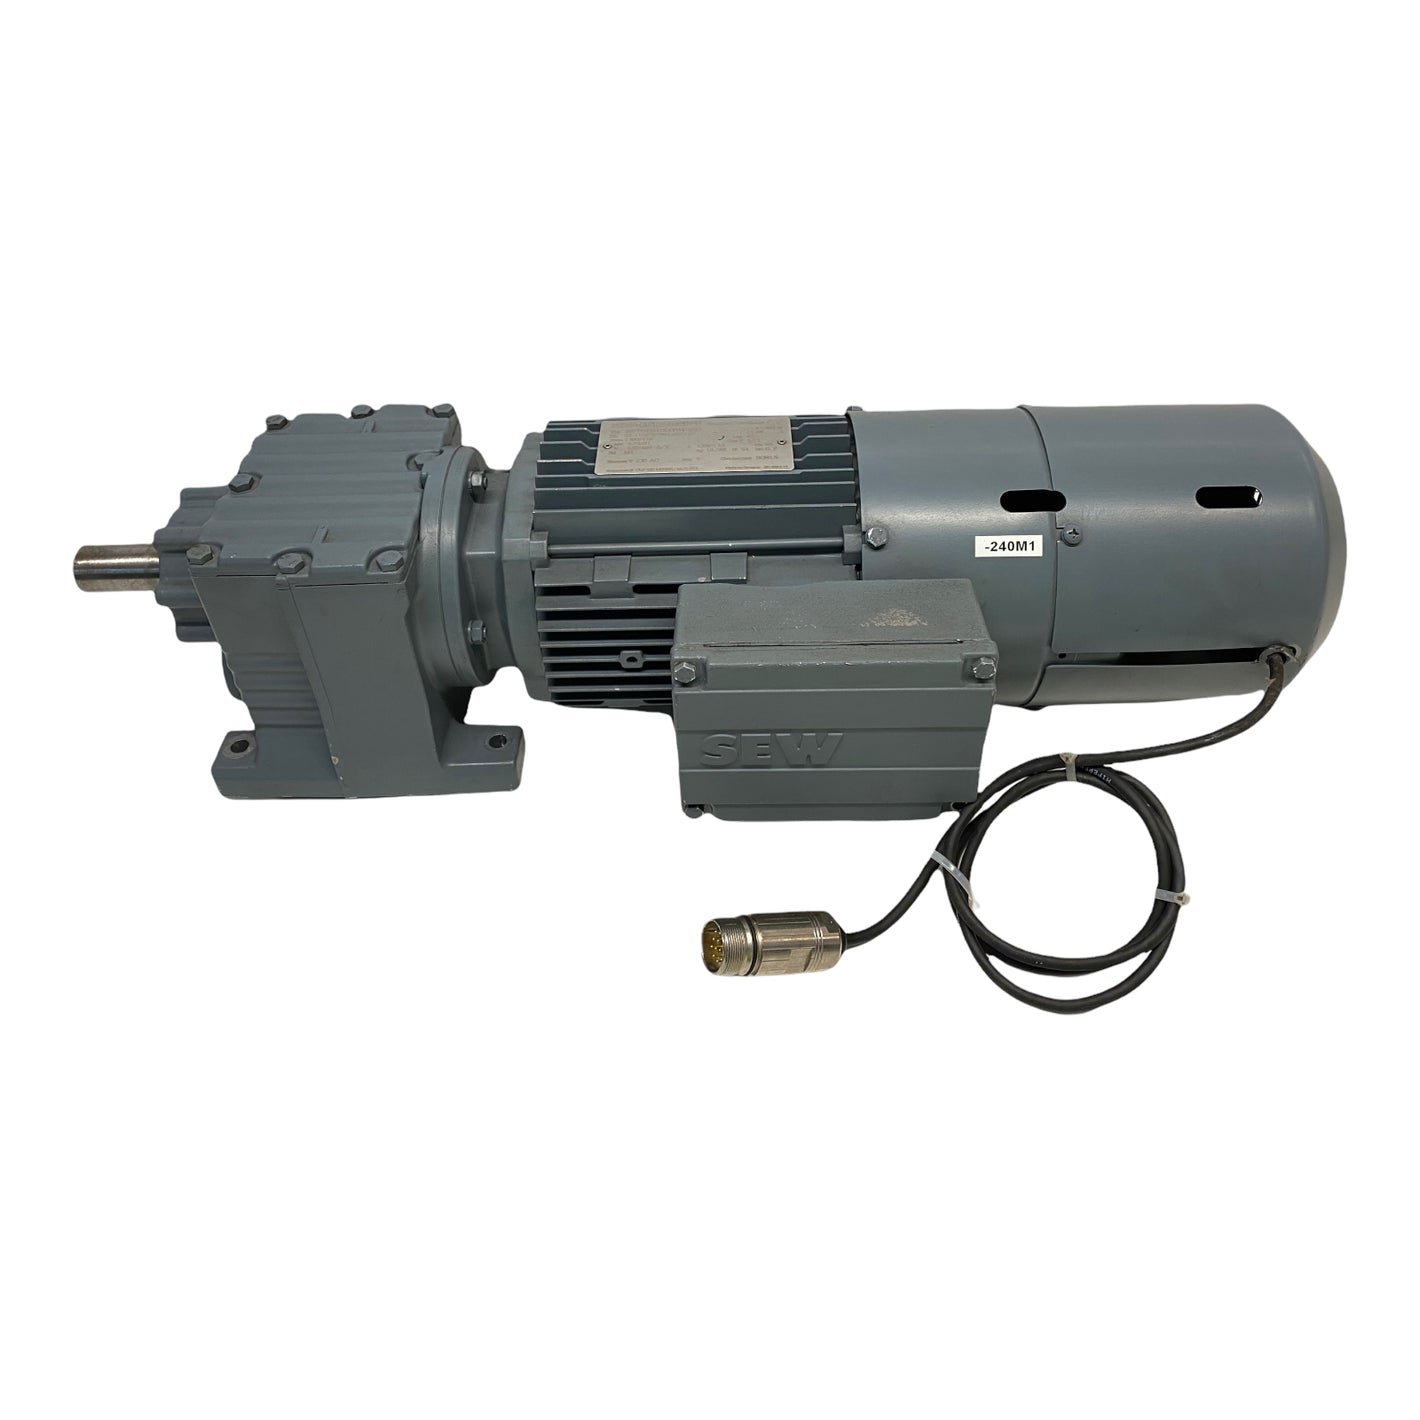 SEW R27DT80N4/BMG/TH/AS3H gear motor 0.75kW 230/400V 3.65/2.10A 50Hz 